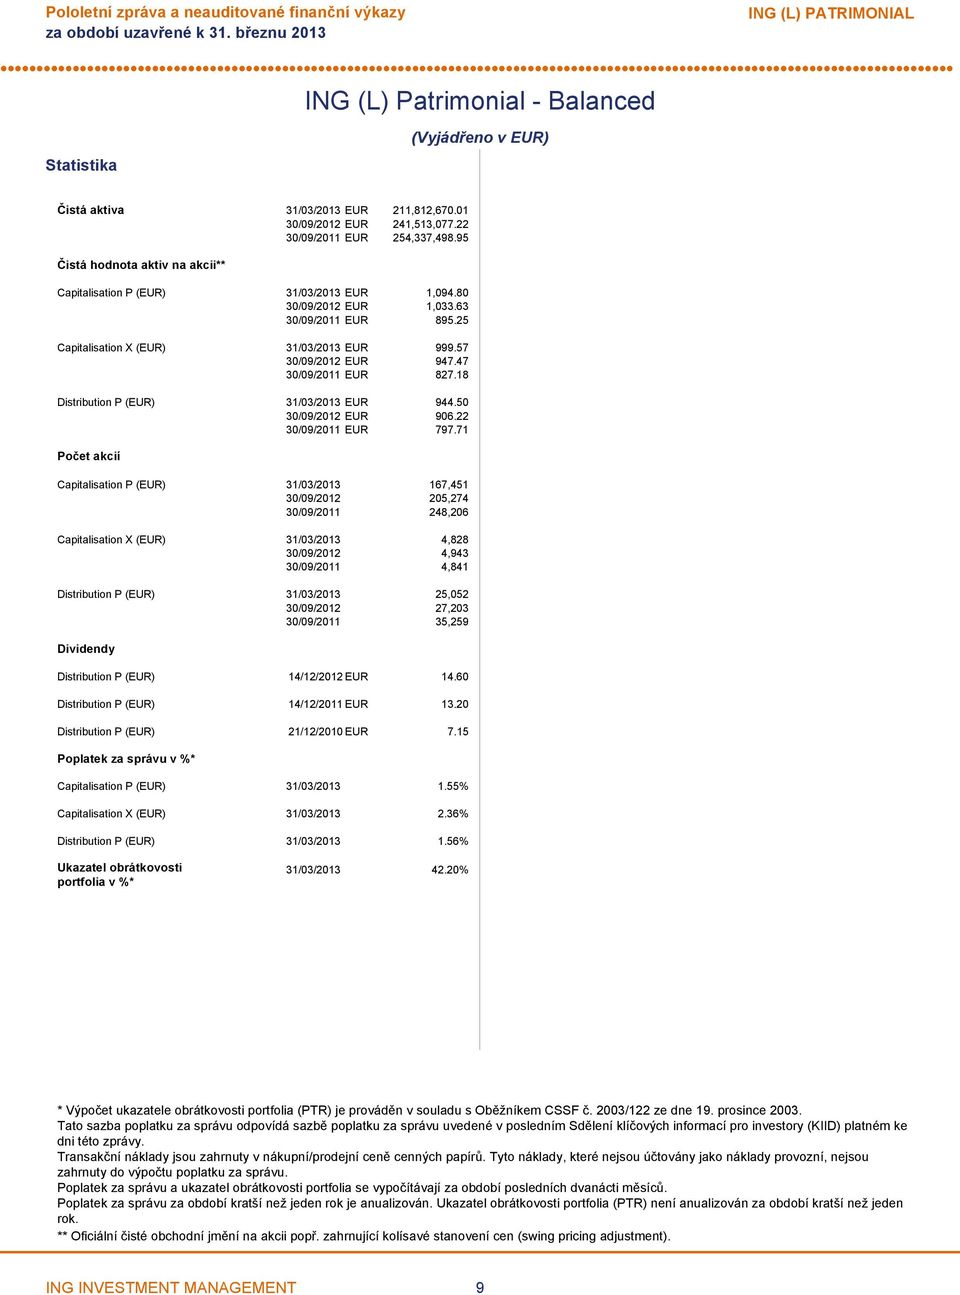 18 Distribution P (EUR) 31/03/2013 EUR 944.50 EUR 906.22 EUR 797.